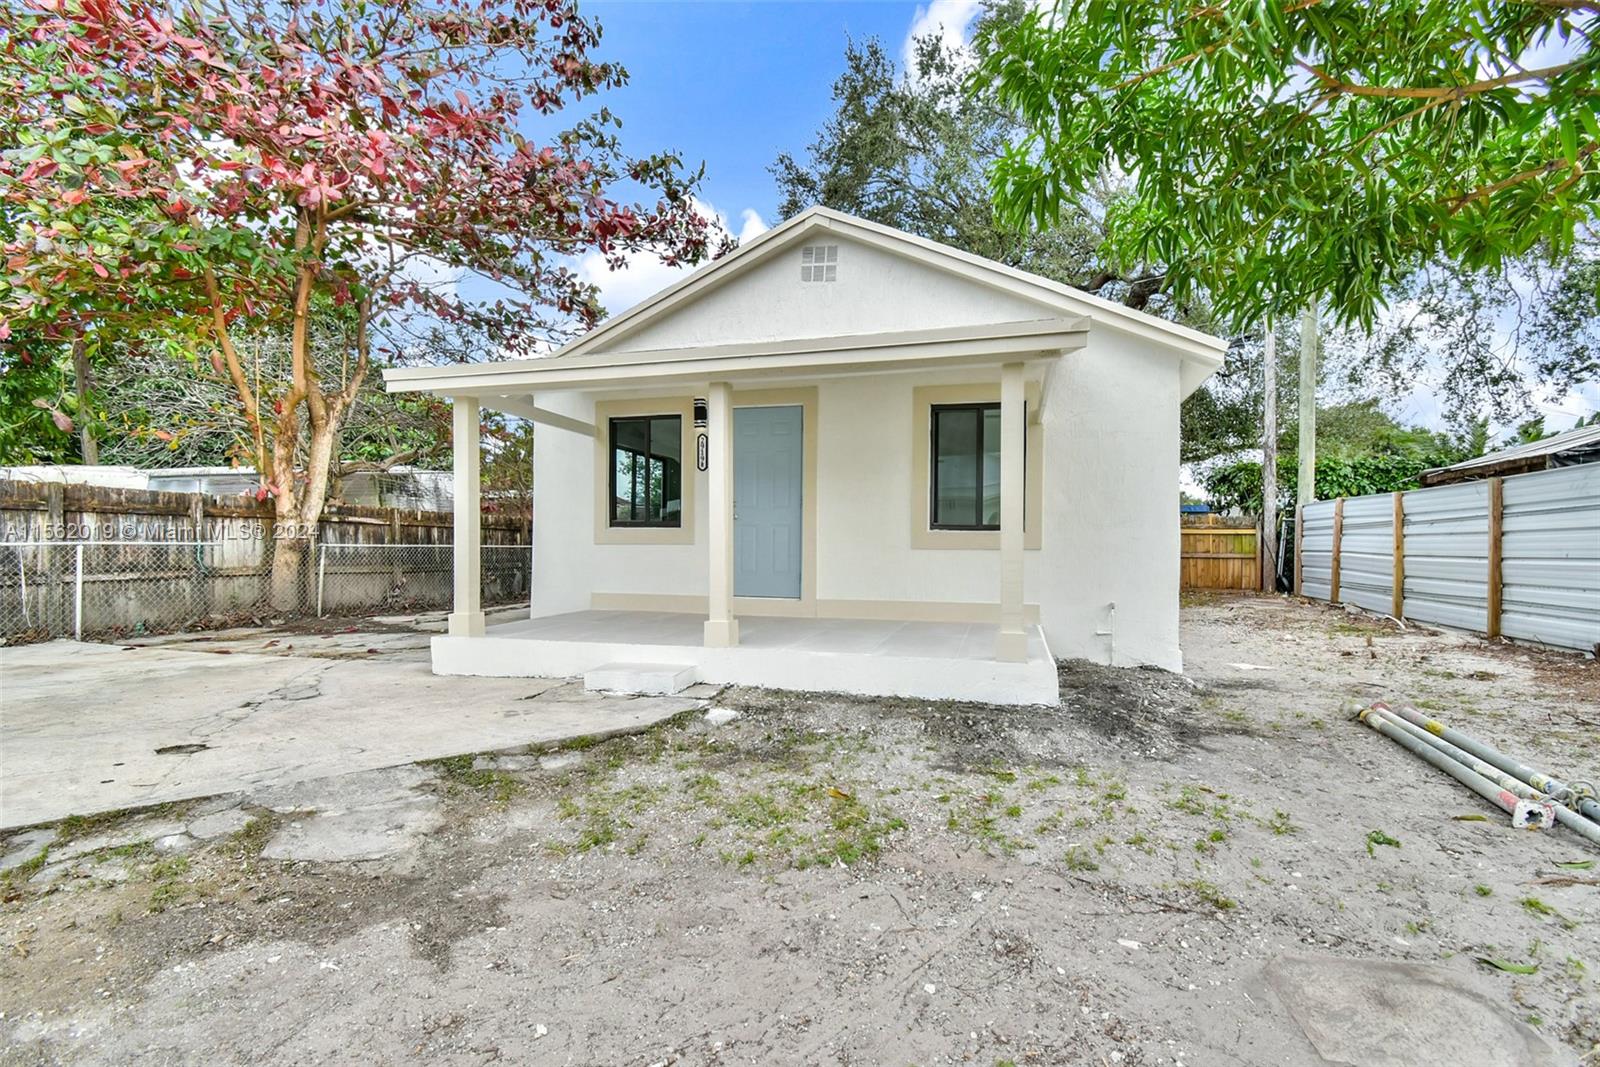 Rental Property at 2919 Nw 92nd St St, Miami, Broward County, Florida -  - $625,000 MO.